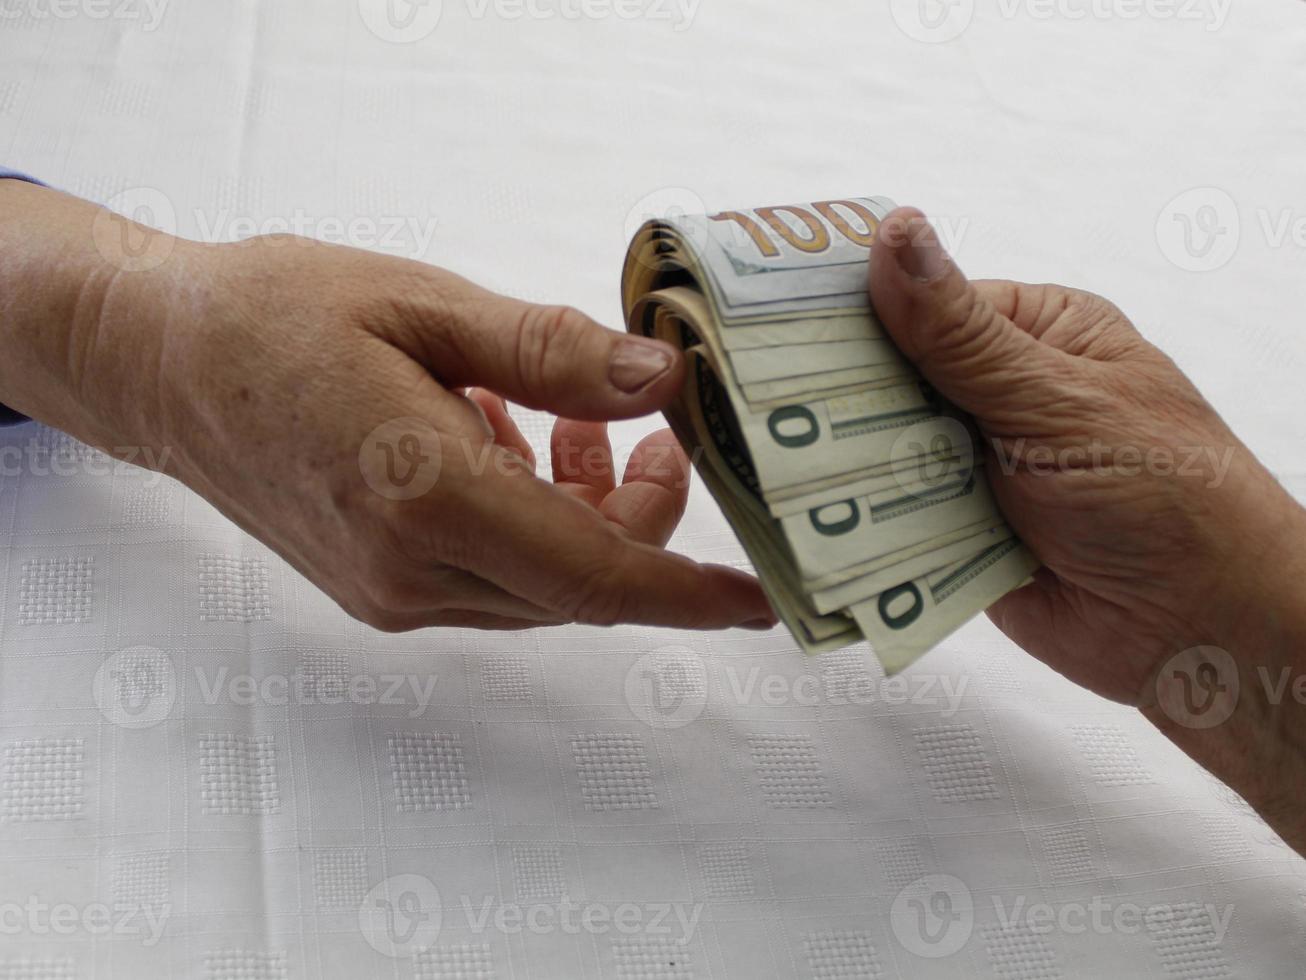 fotografia para temas de economia e finanças com dinheiro em dólares americanos foto